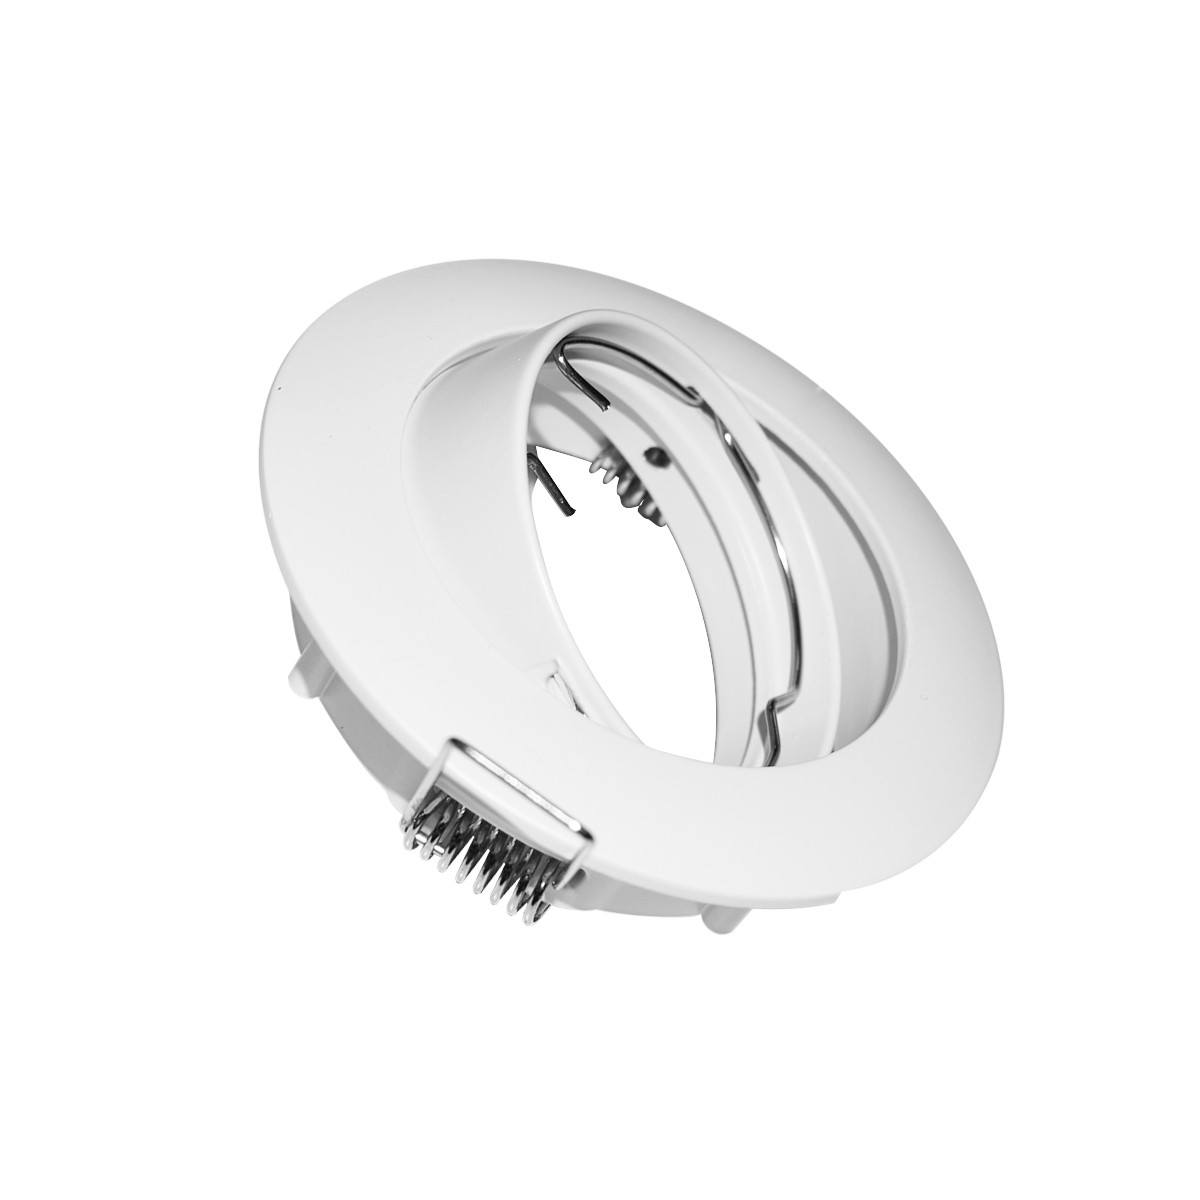 Aro downlight circular basculante para lâmpada GU10 / MR16 - Corte Ø72 mm